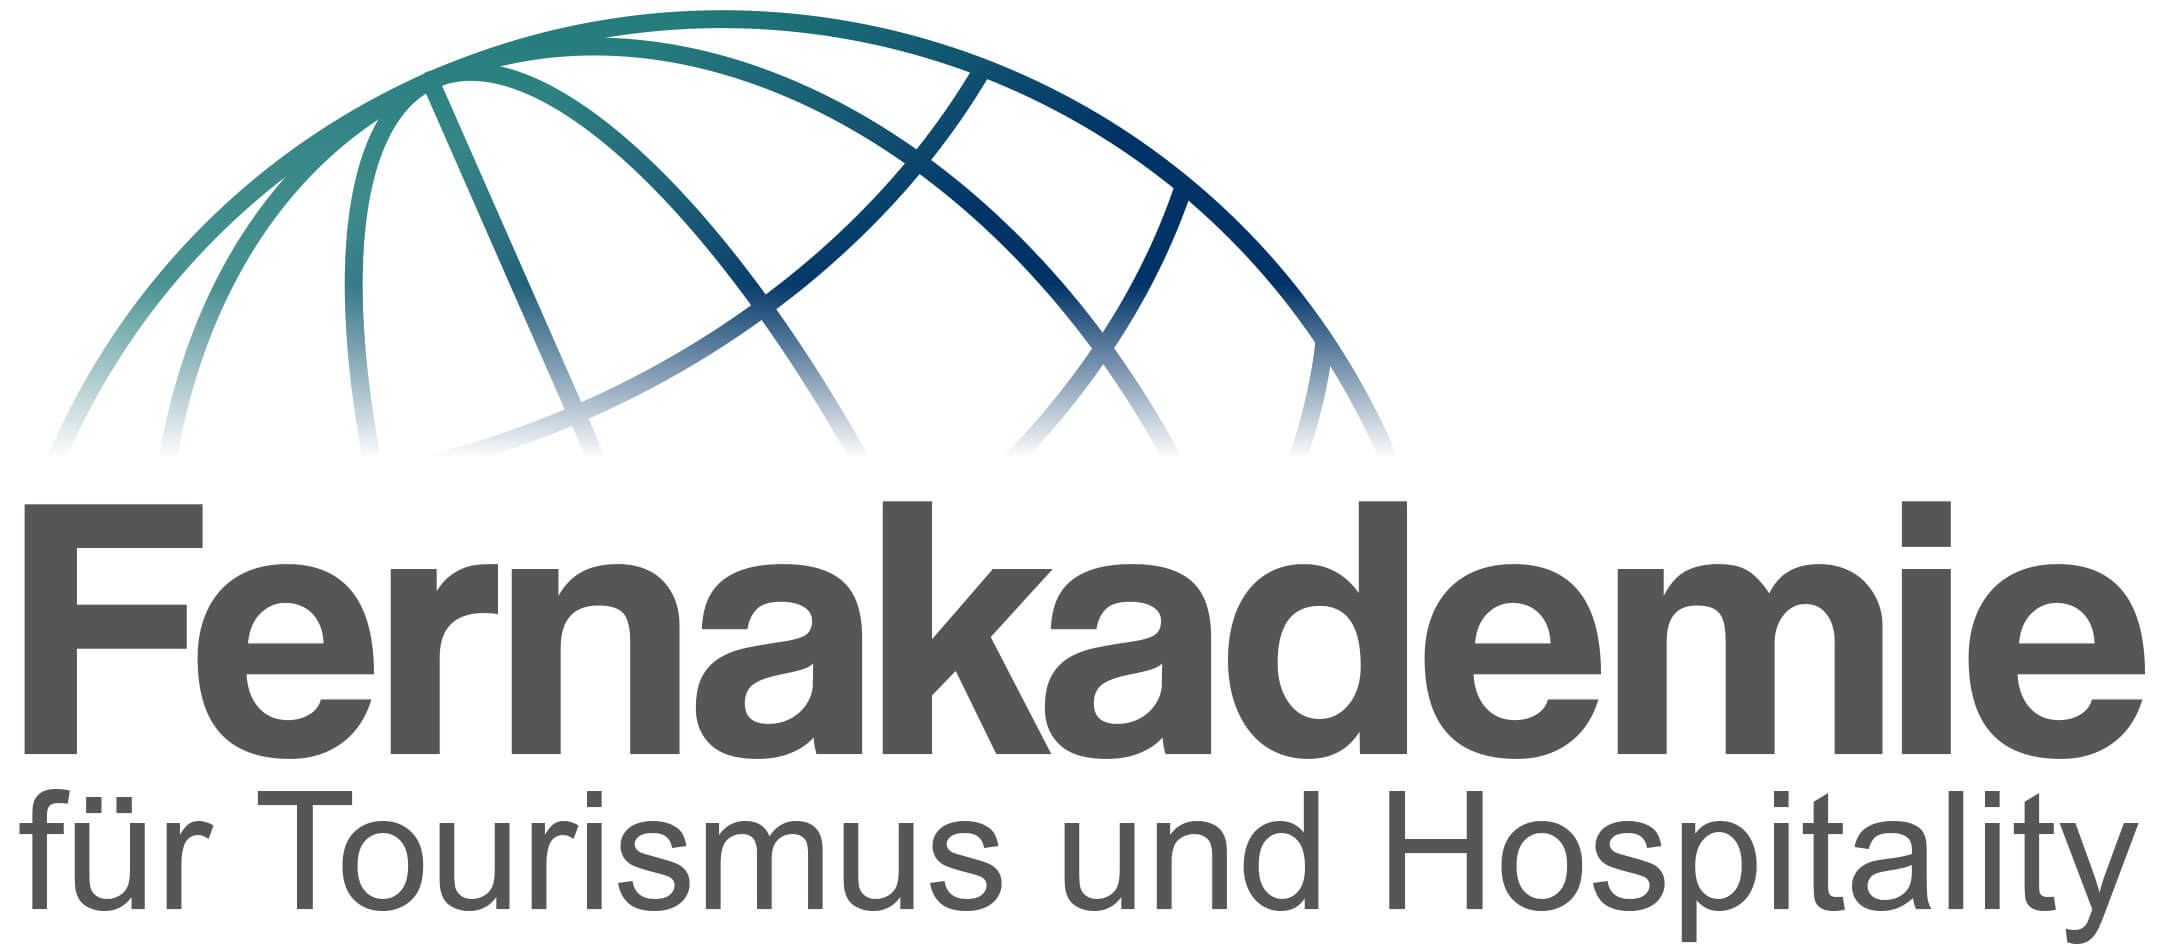 Fernakademie für Tourismus und Hospitality Logo